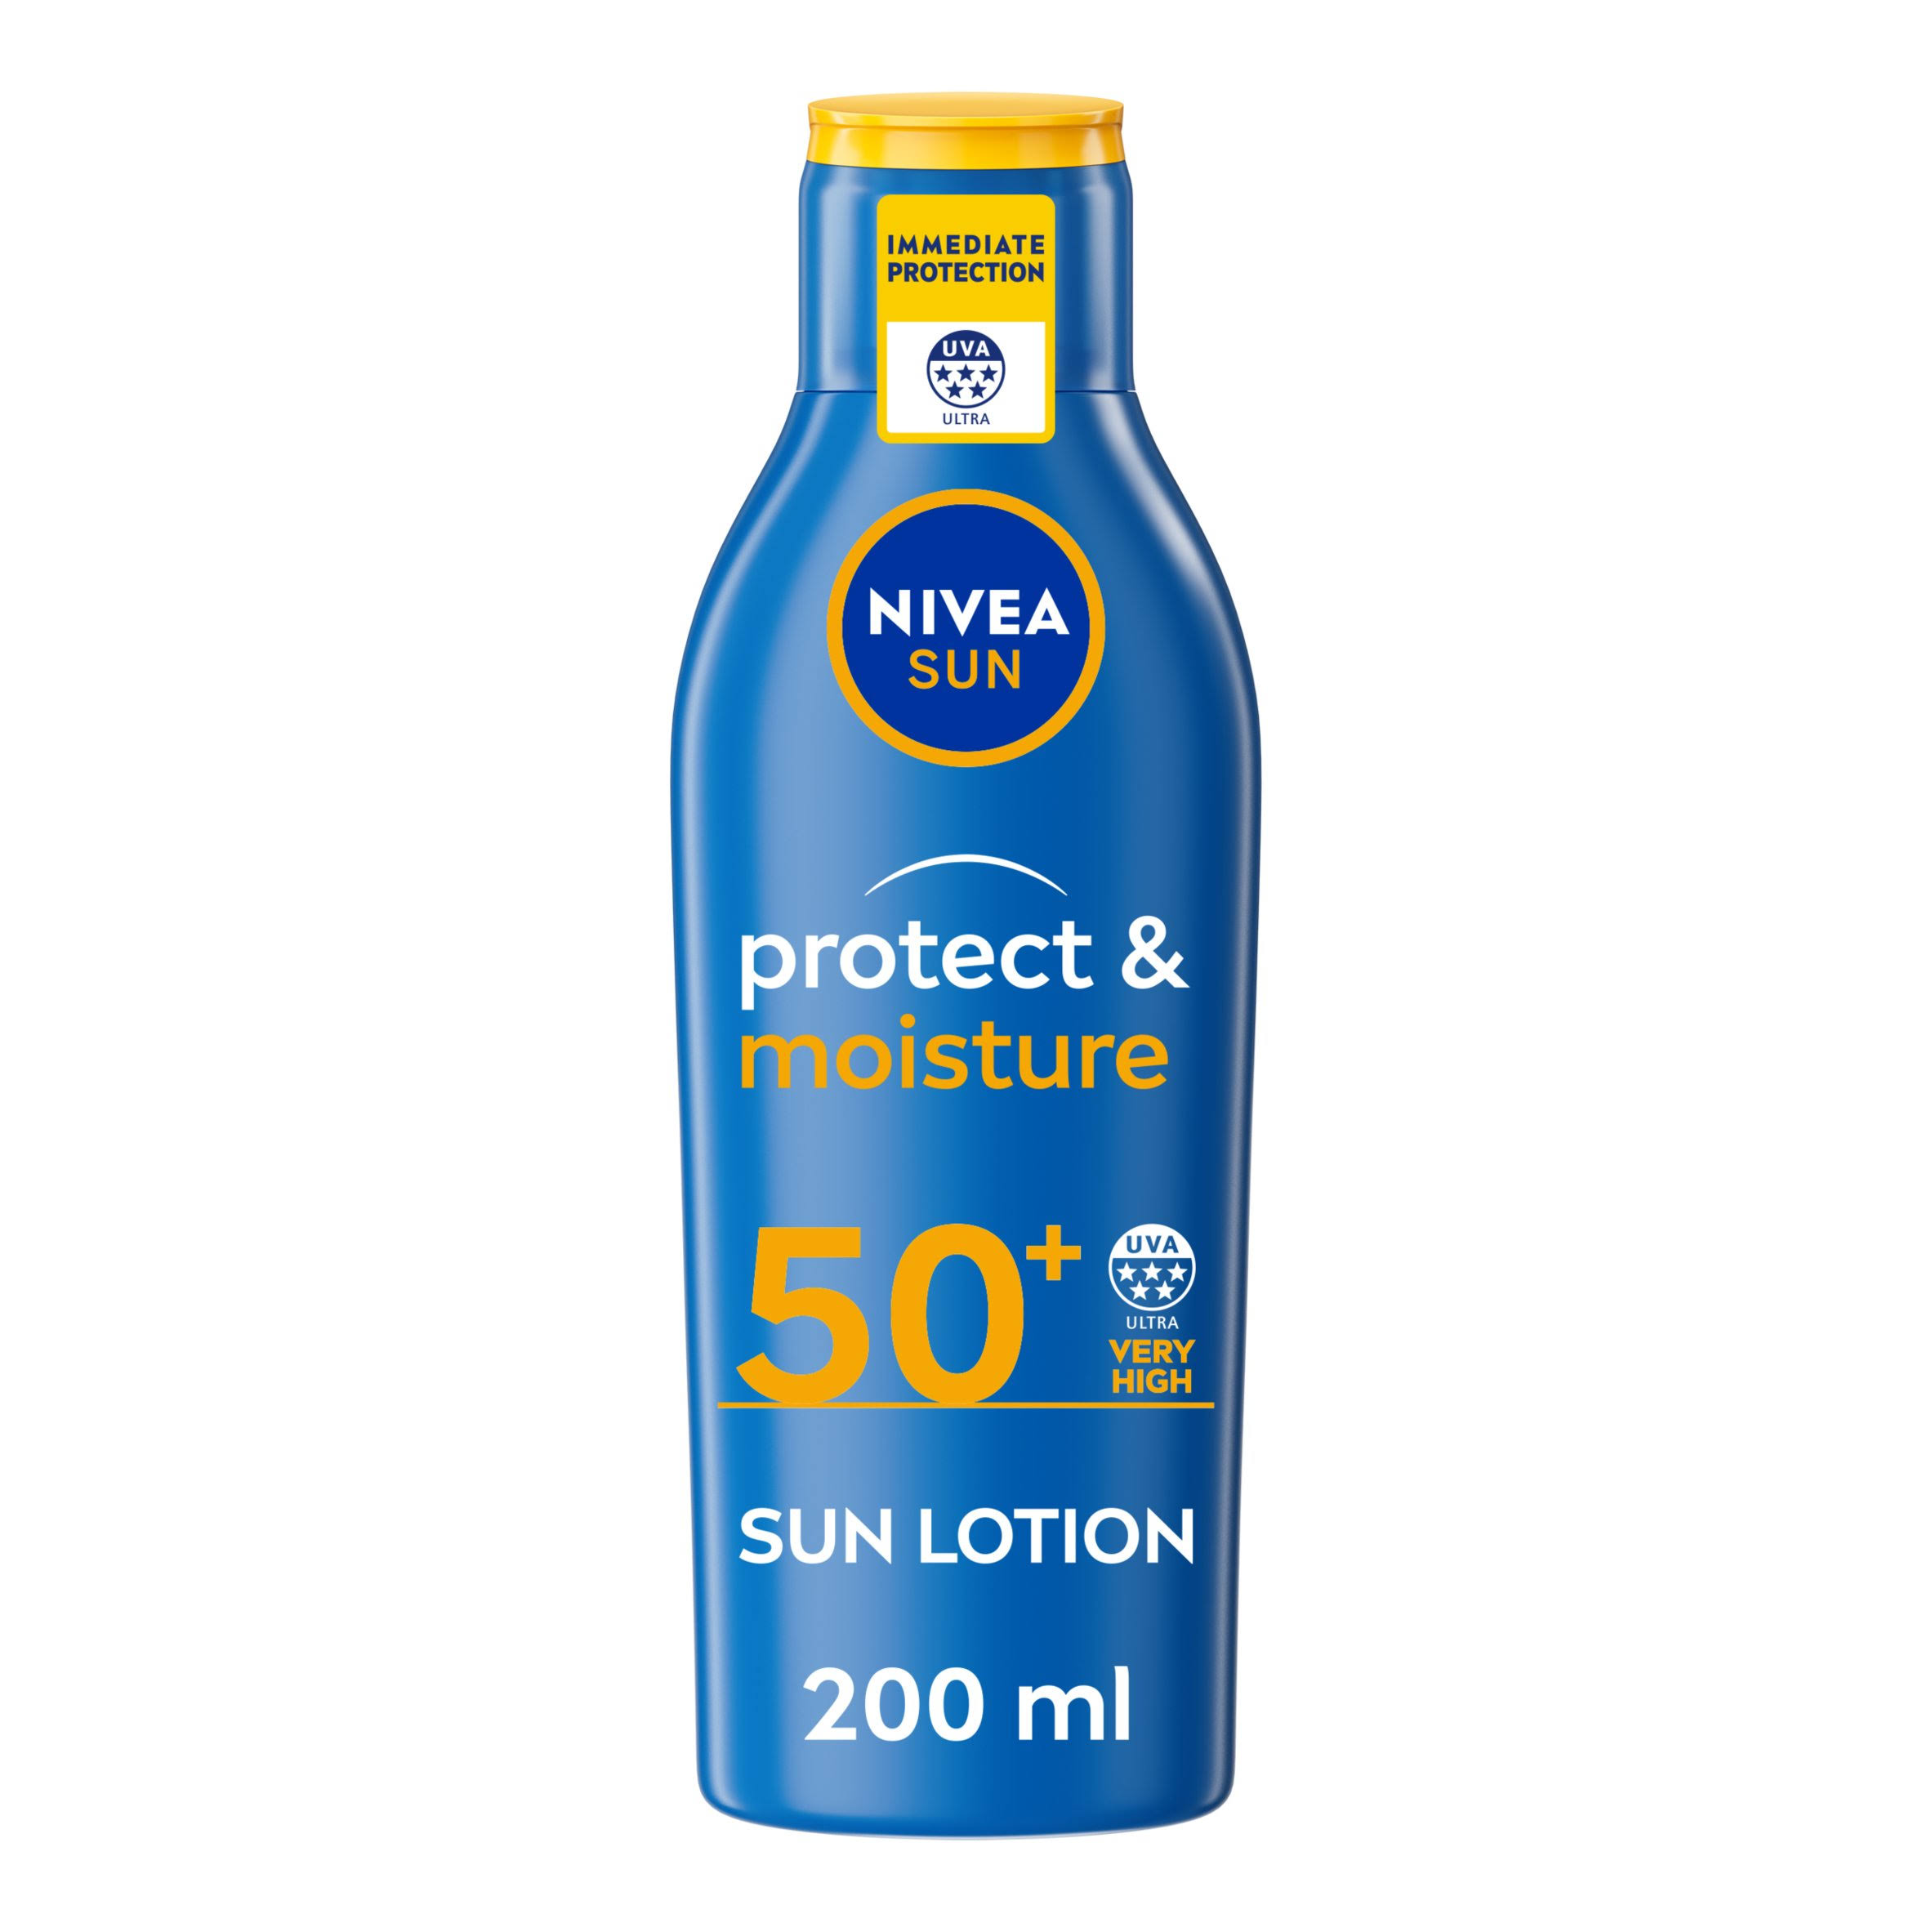 Nivea Protect and Moisture Sun SPF50 Lotion - 200ml